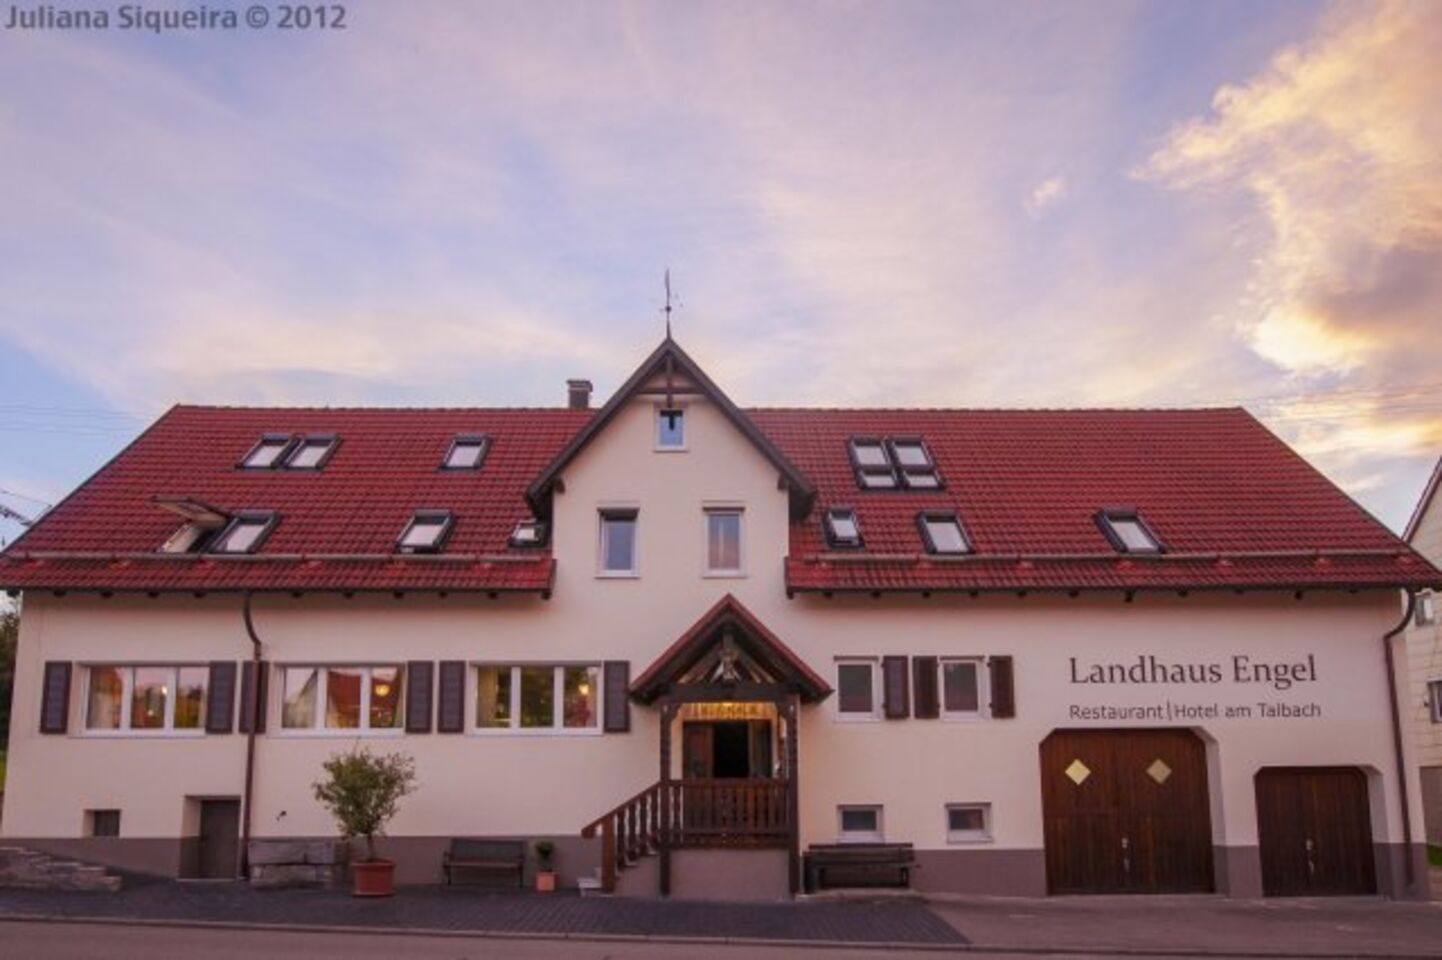 A photo of Landhaus Engel